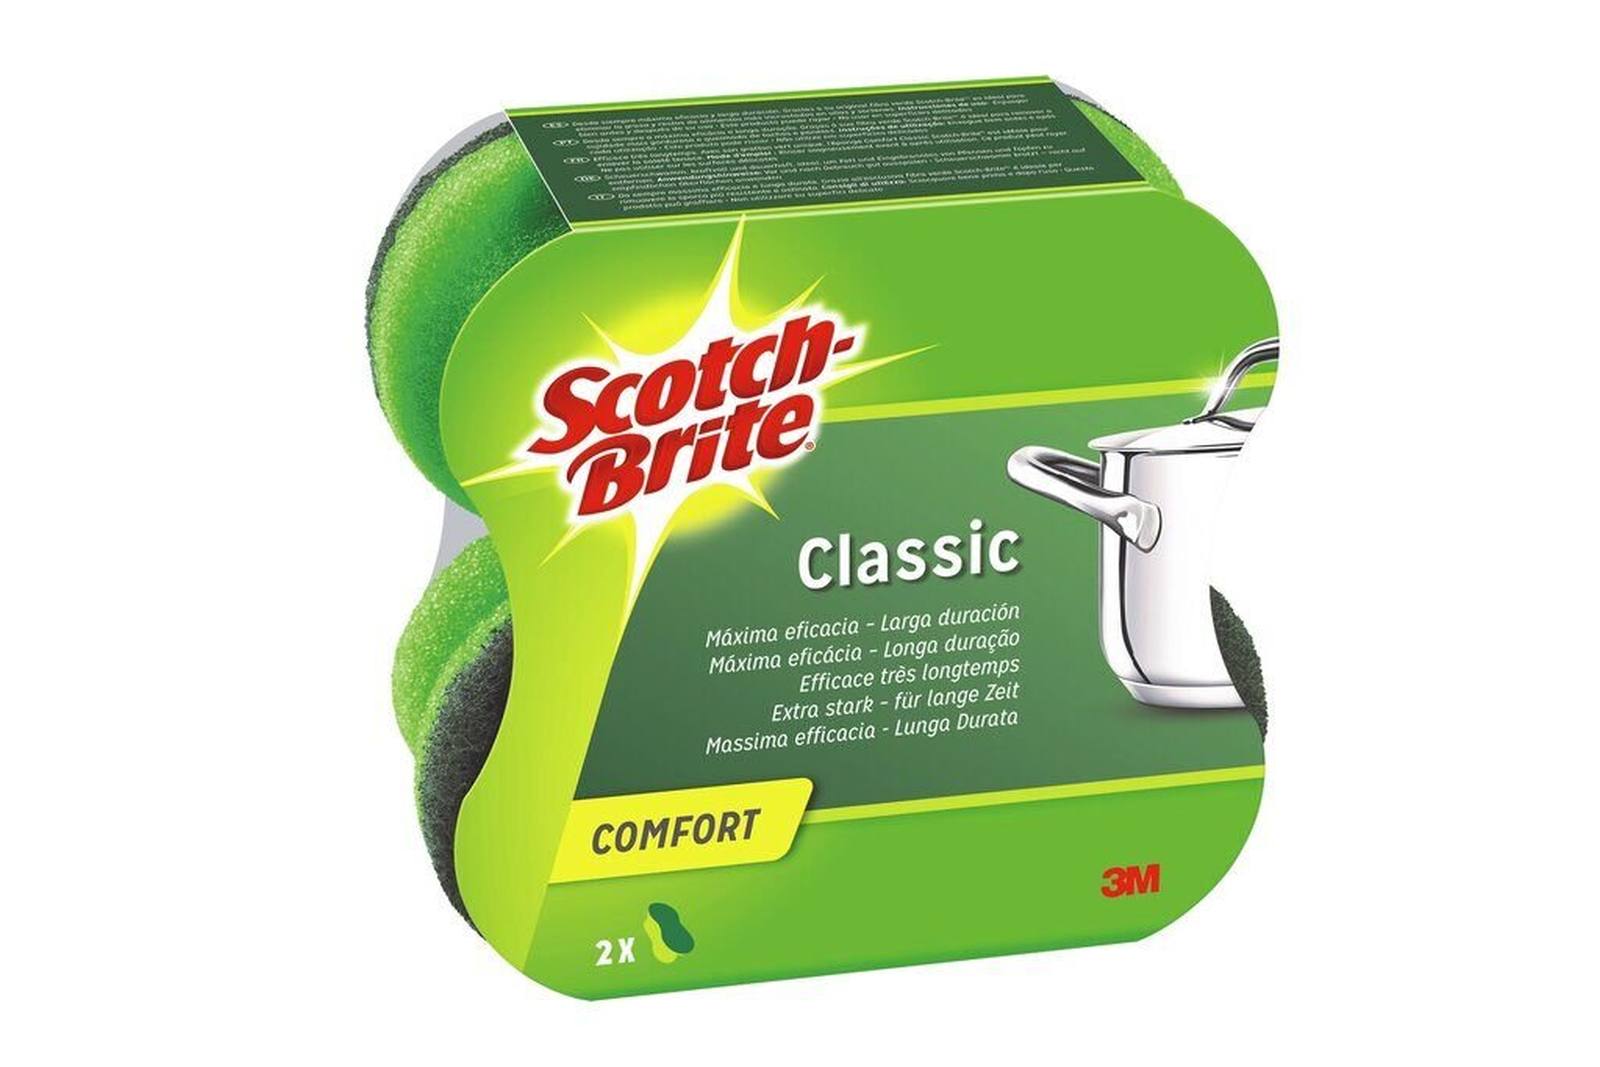 3M Scotch-Brite Esponja limpiadora confort clásica extra fuerte CLCNS2, verde-verde, 2 piezas